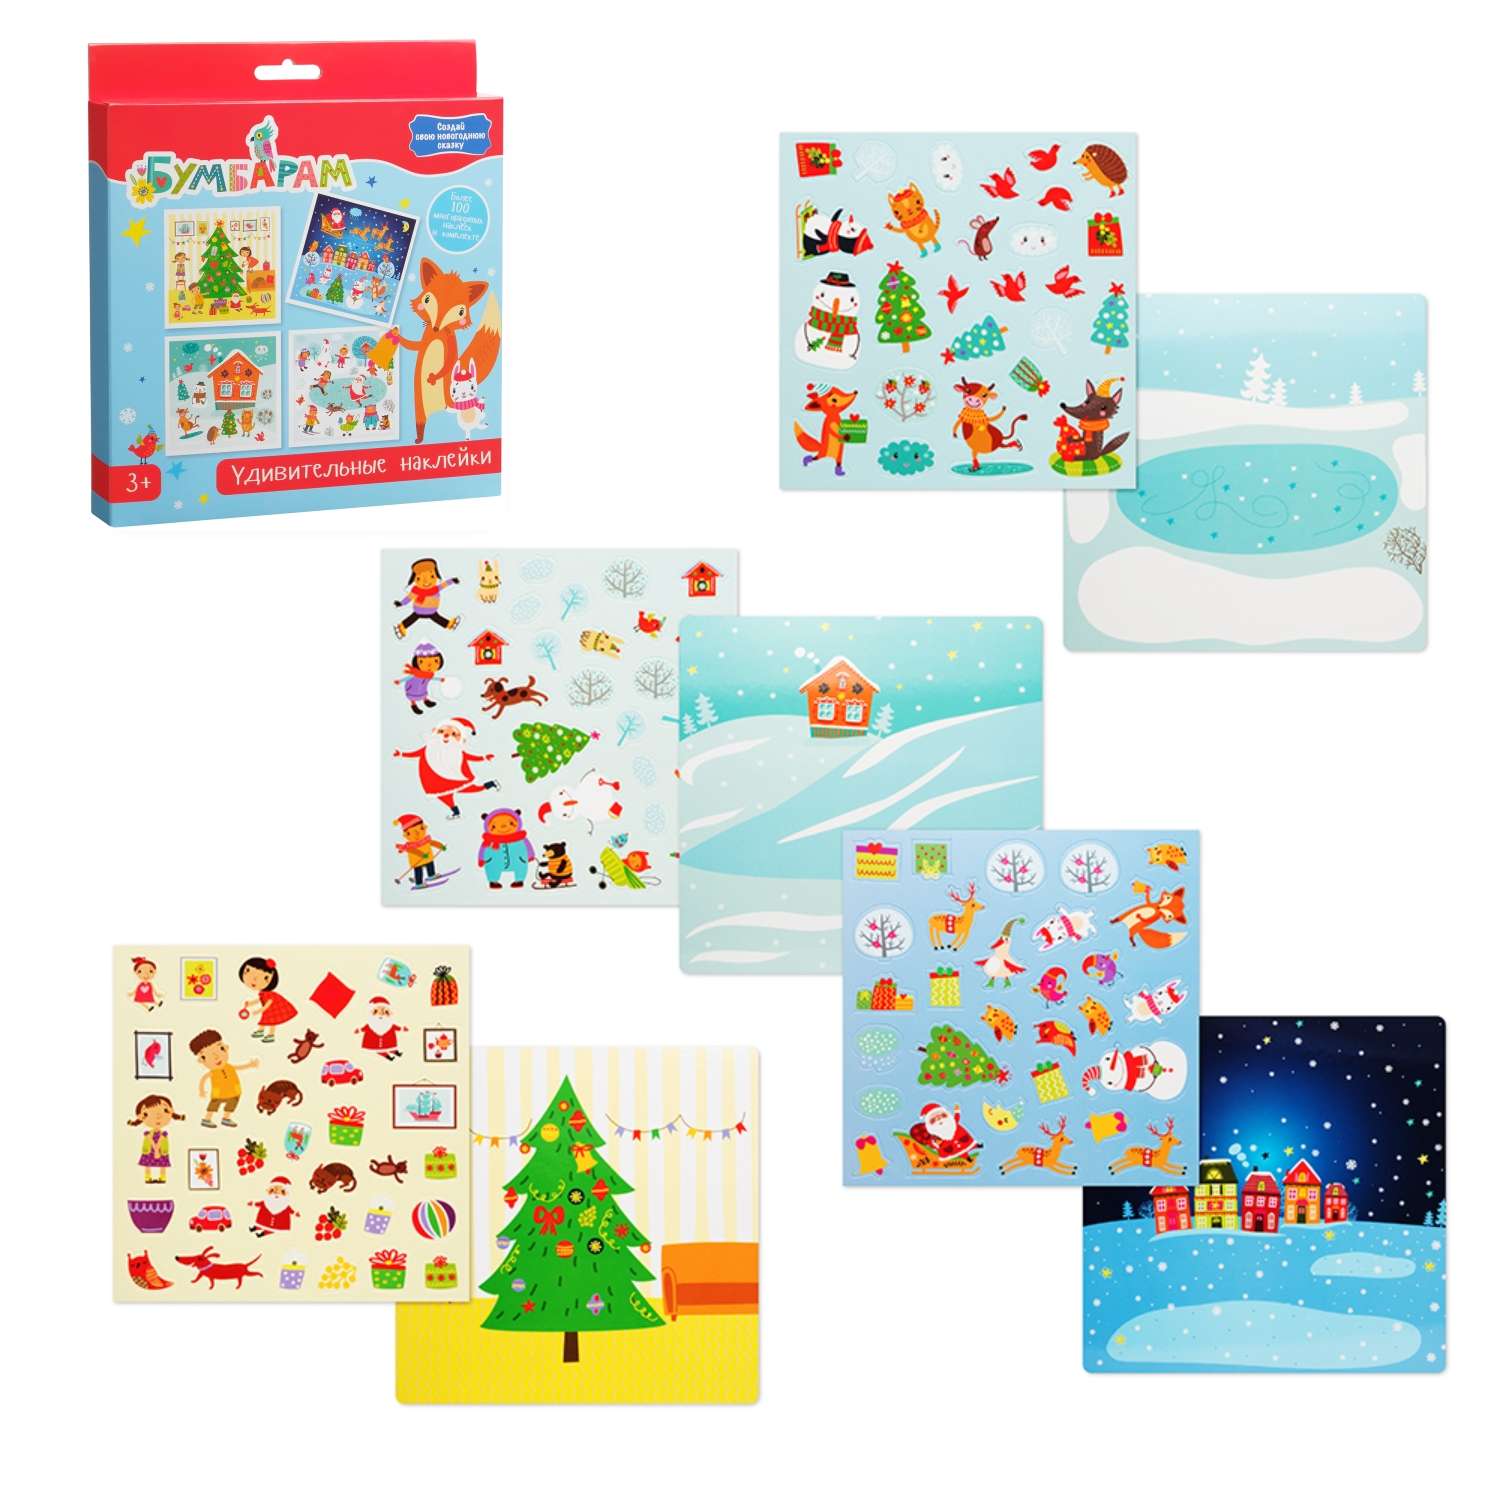 Игровой набор Бумбарам многоразовые наклейки Новый год для малышей - фото 3